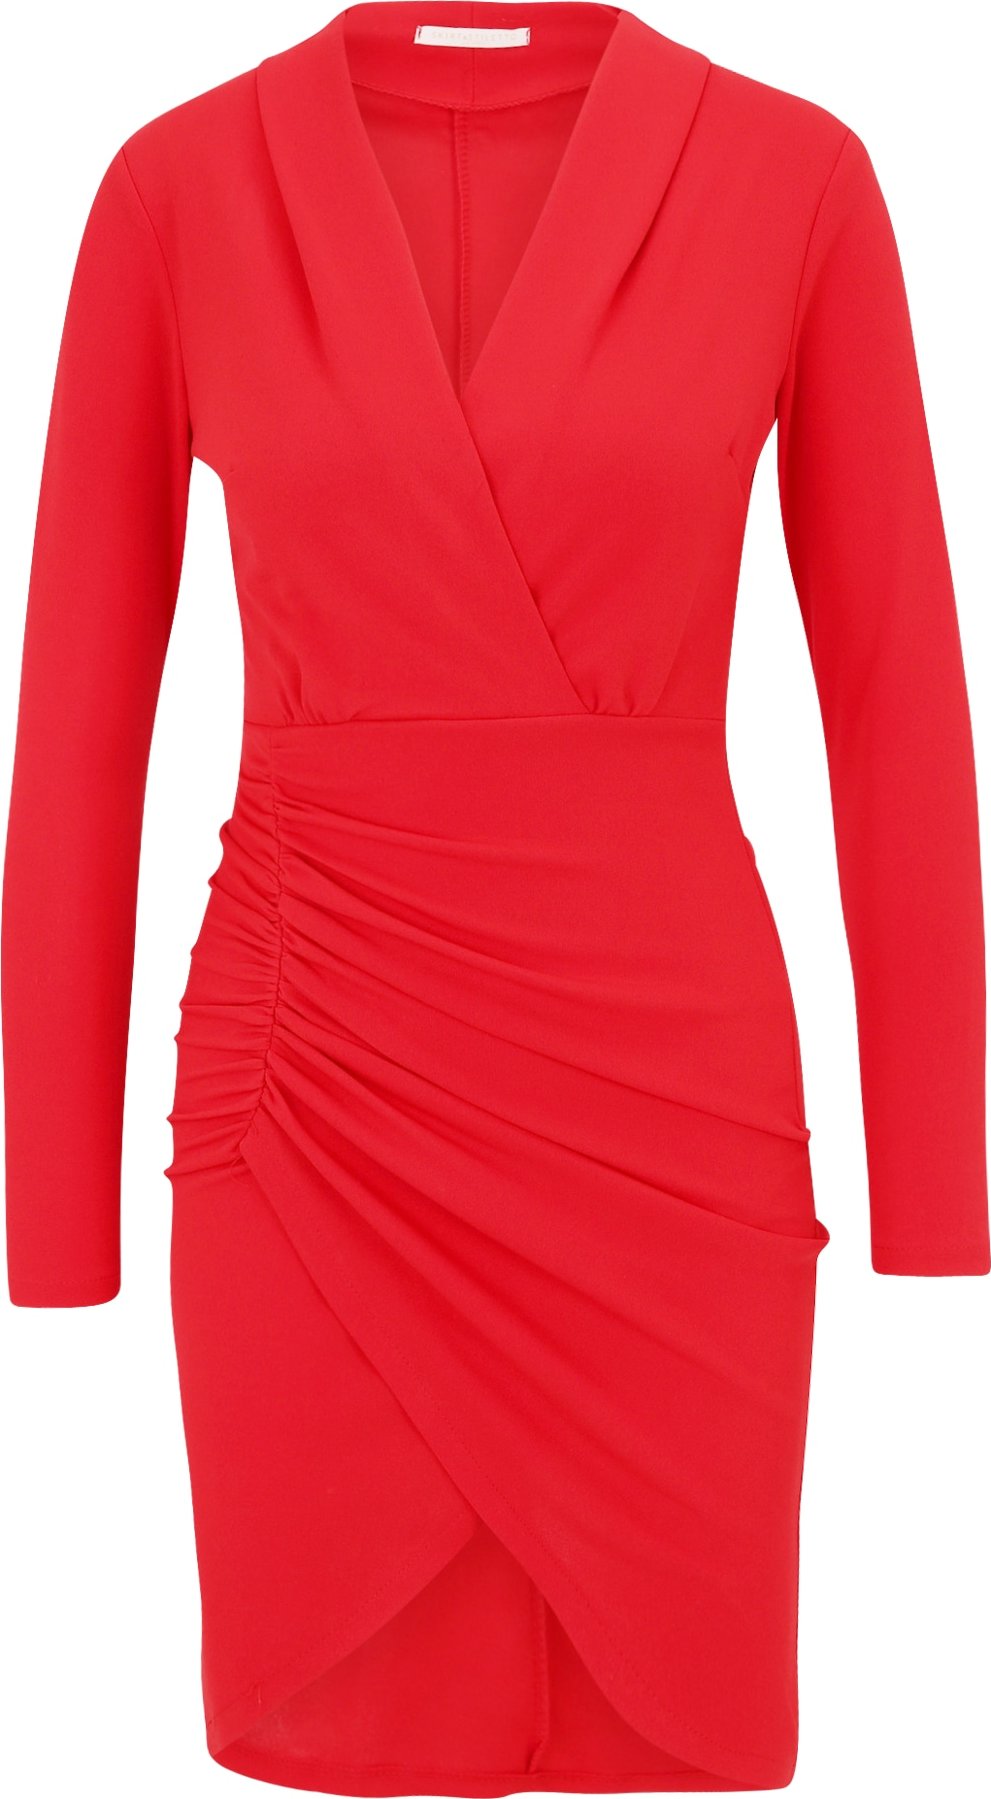 Skirt & Stiletto Šaty 'Gabriela' červená